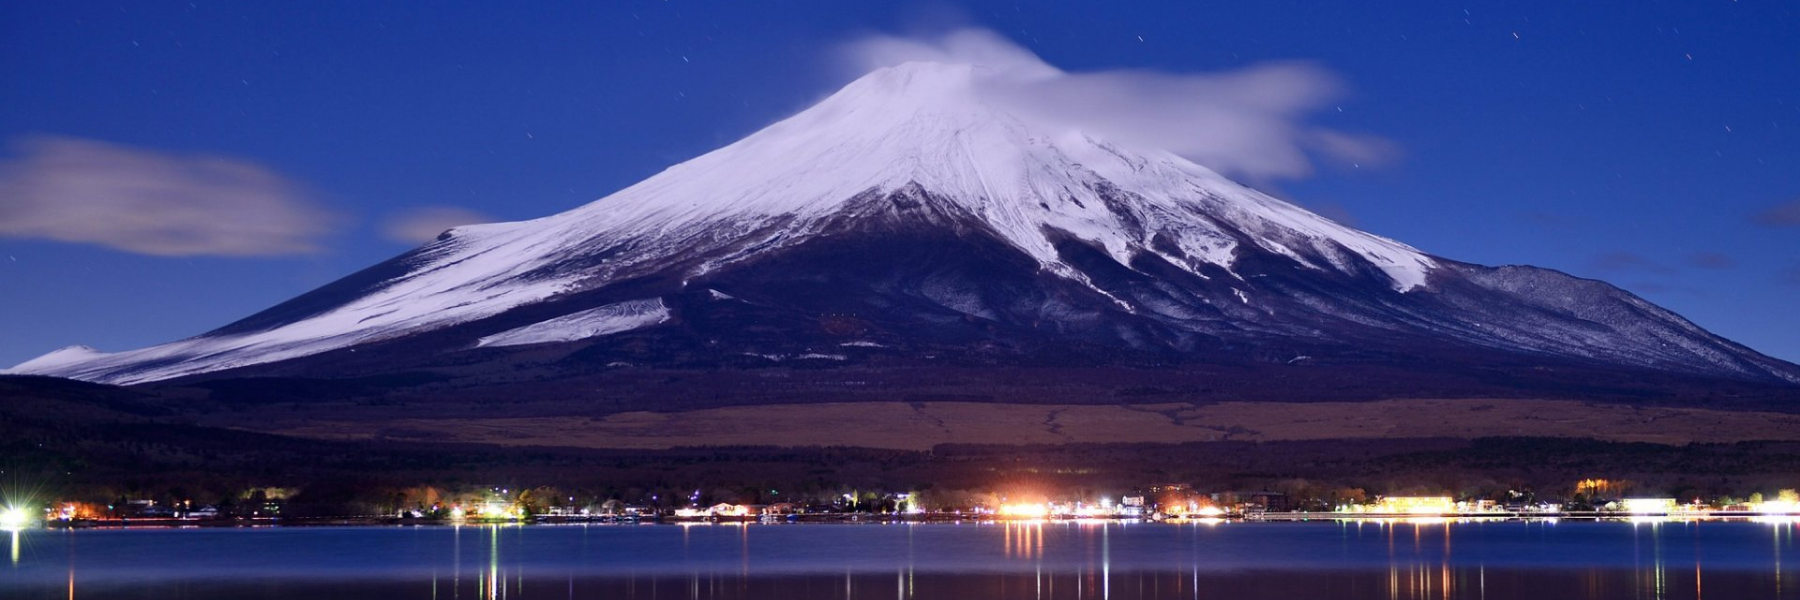 Фудзияма работа. Гора-вулкан Фудзияма. Японский вулкан Фудзияма. Гора Фудзи. Вулкан Фудзияма извержение.